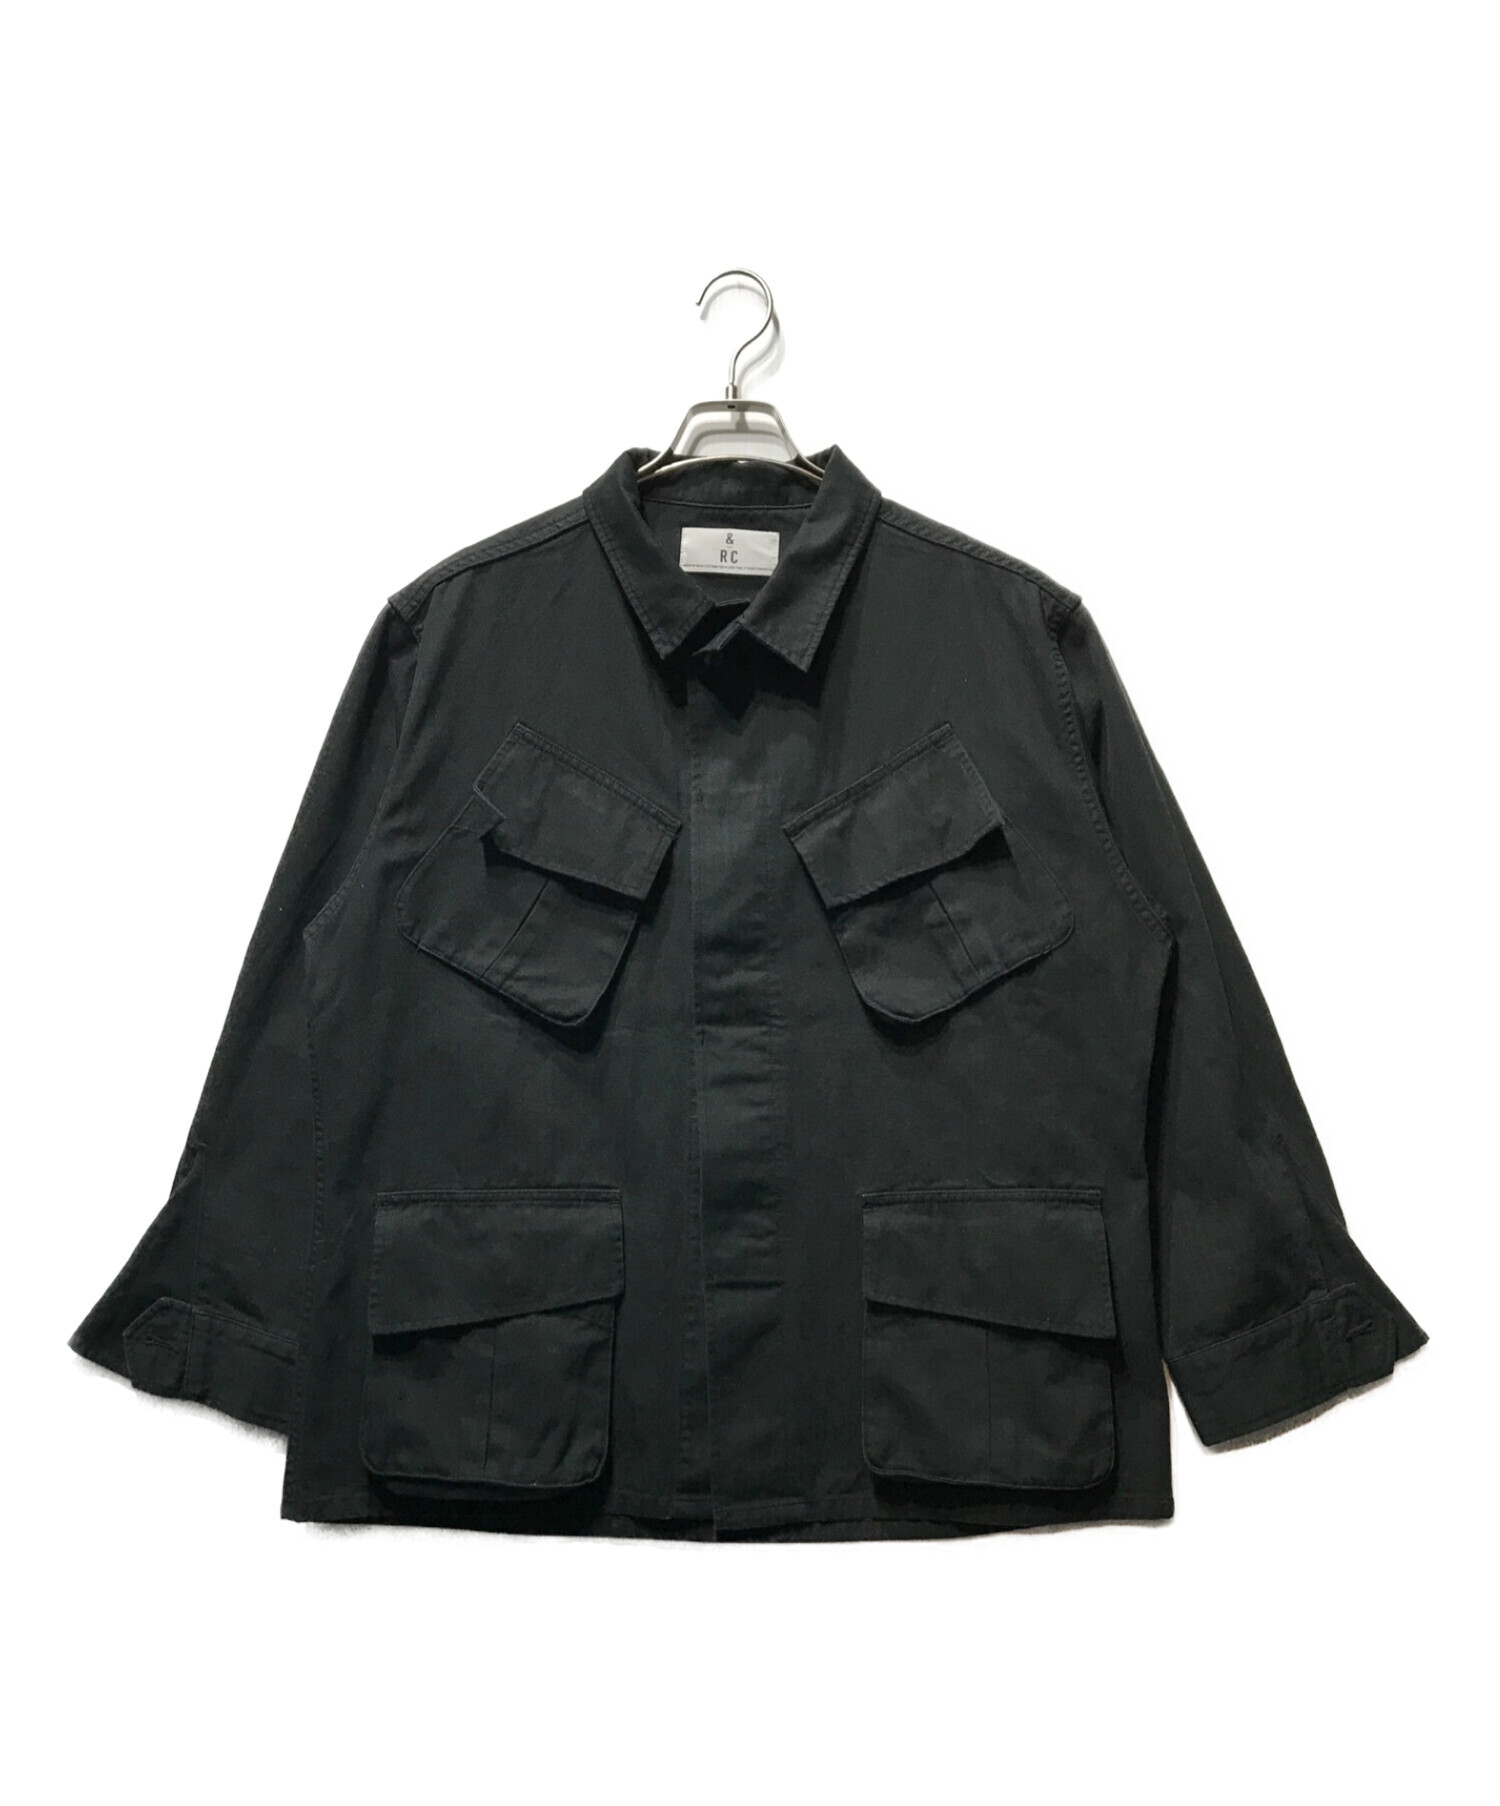 Curensology (カレンソロジー) ファティーグジャケット ブラック サイズ:F